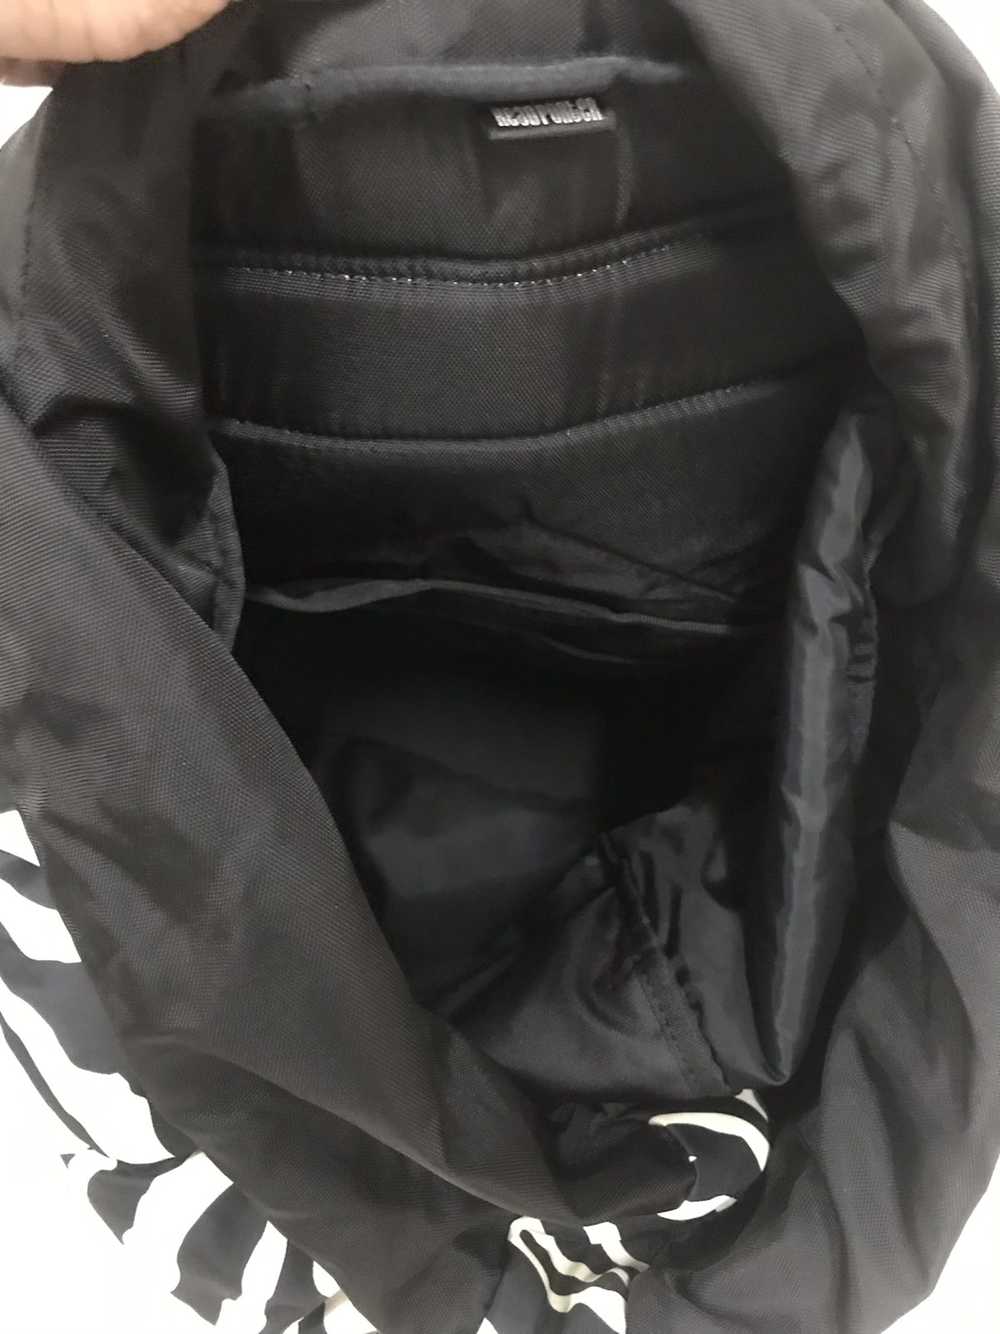 Porter Porter-Zebra Rucksack backpack - image 10